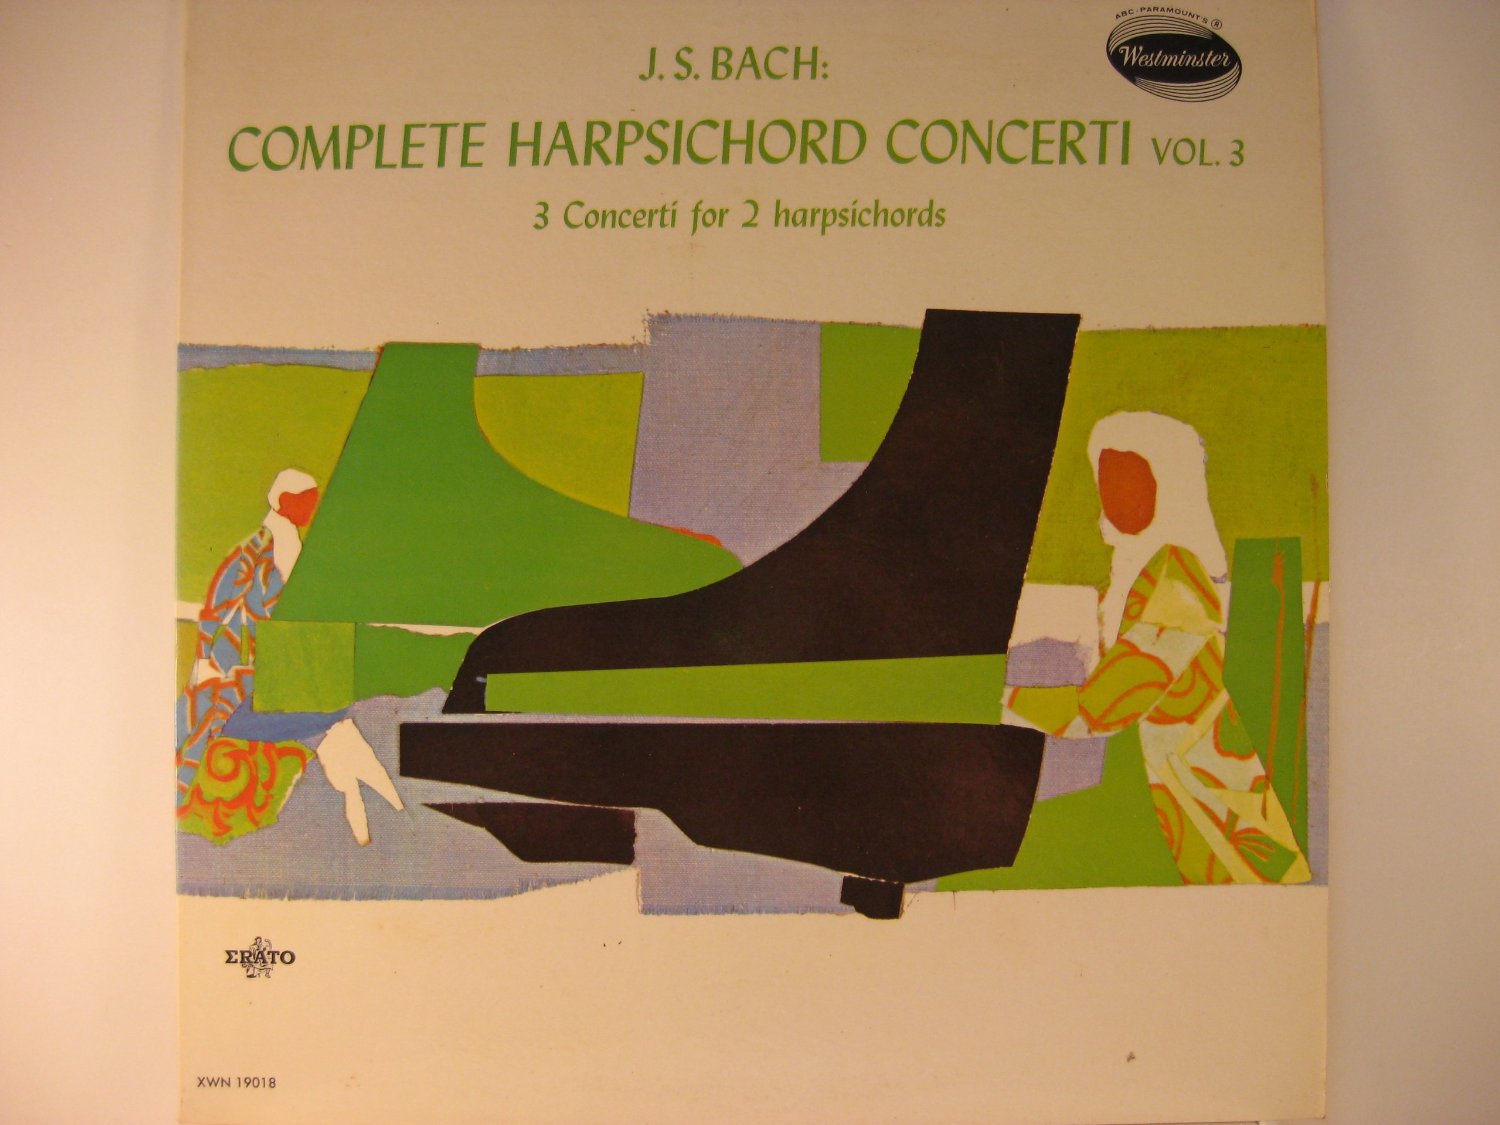 J. S. Bach: Complete Harpsicord Concerti Vol. 3